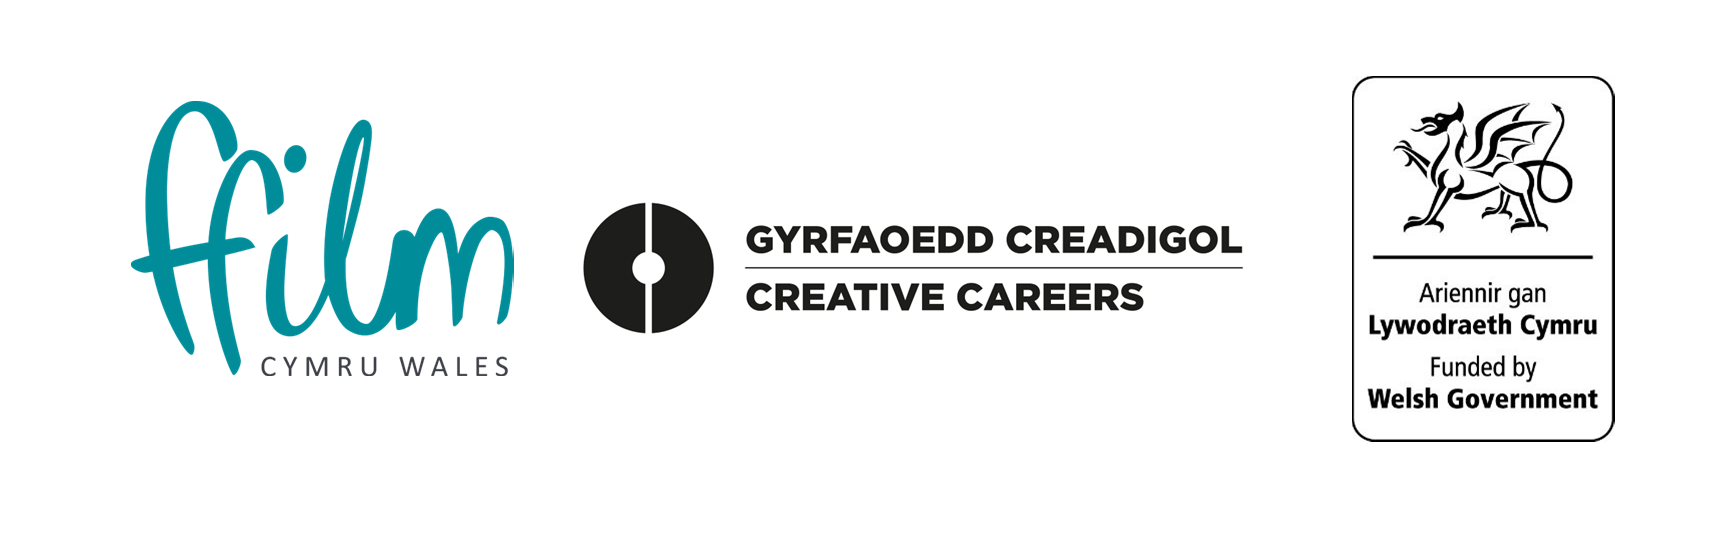 screen careers funder logos